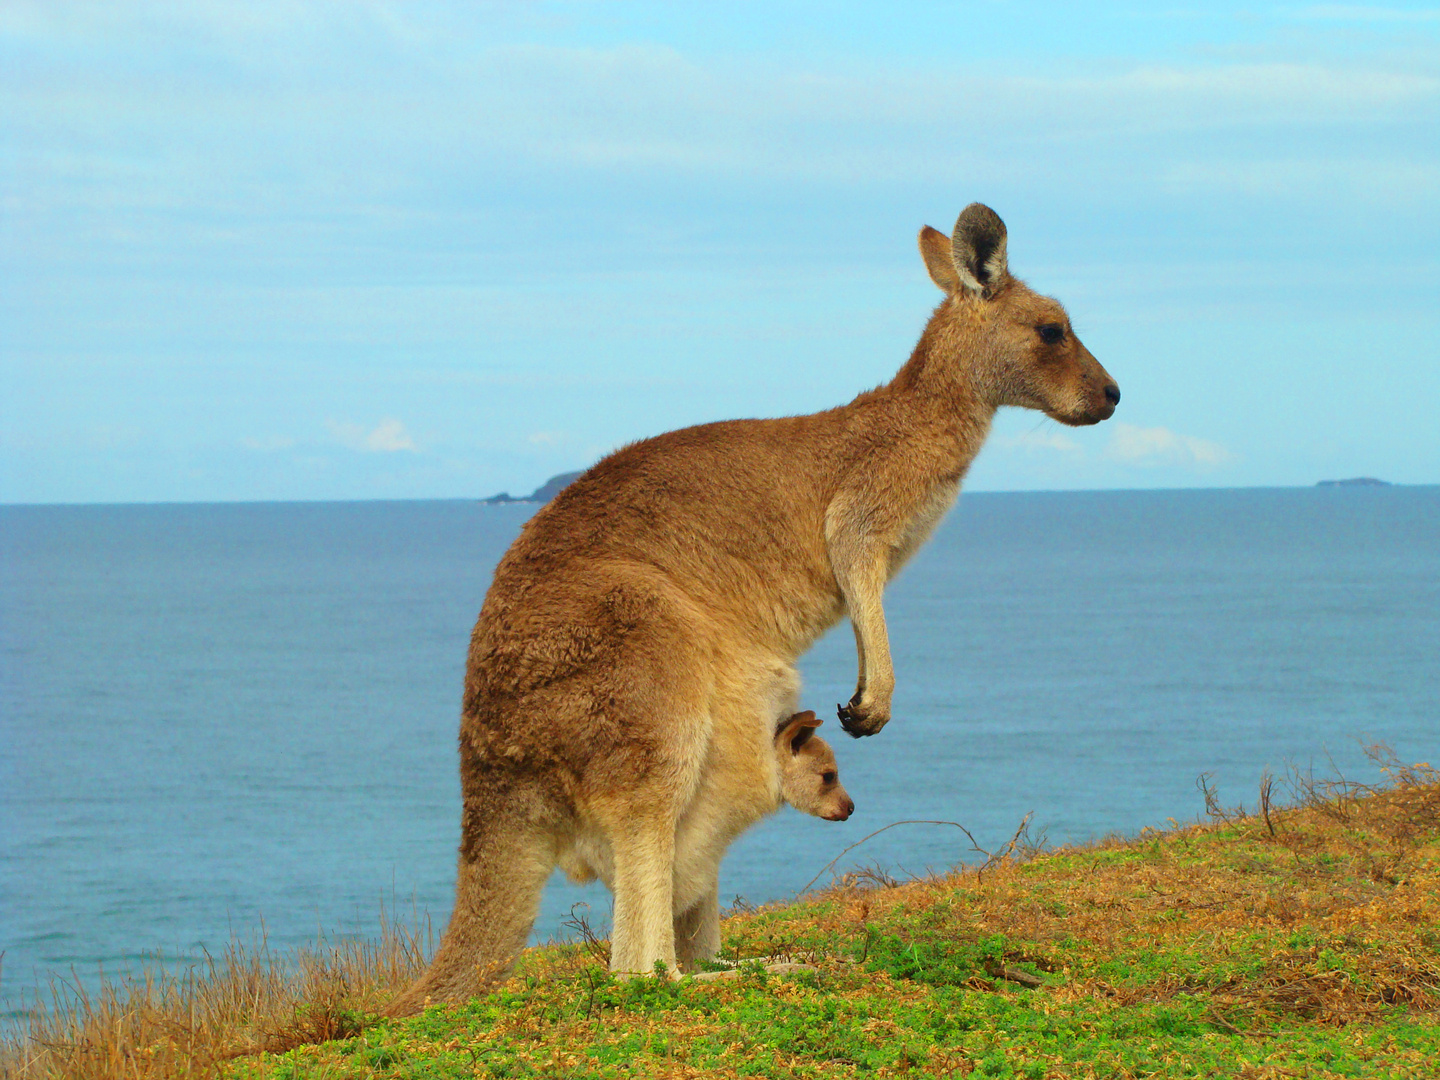 Kangaroo mum